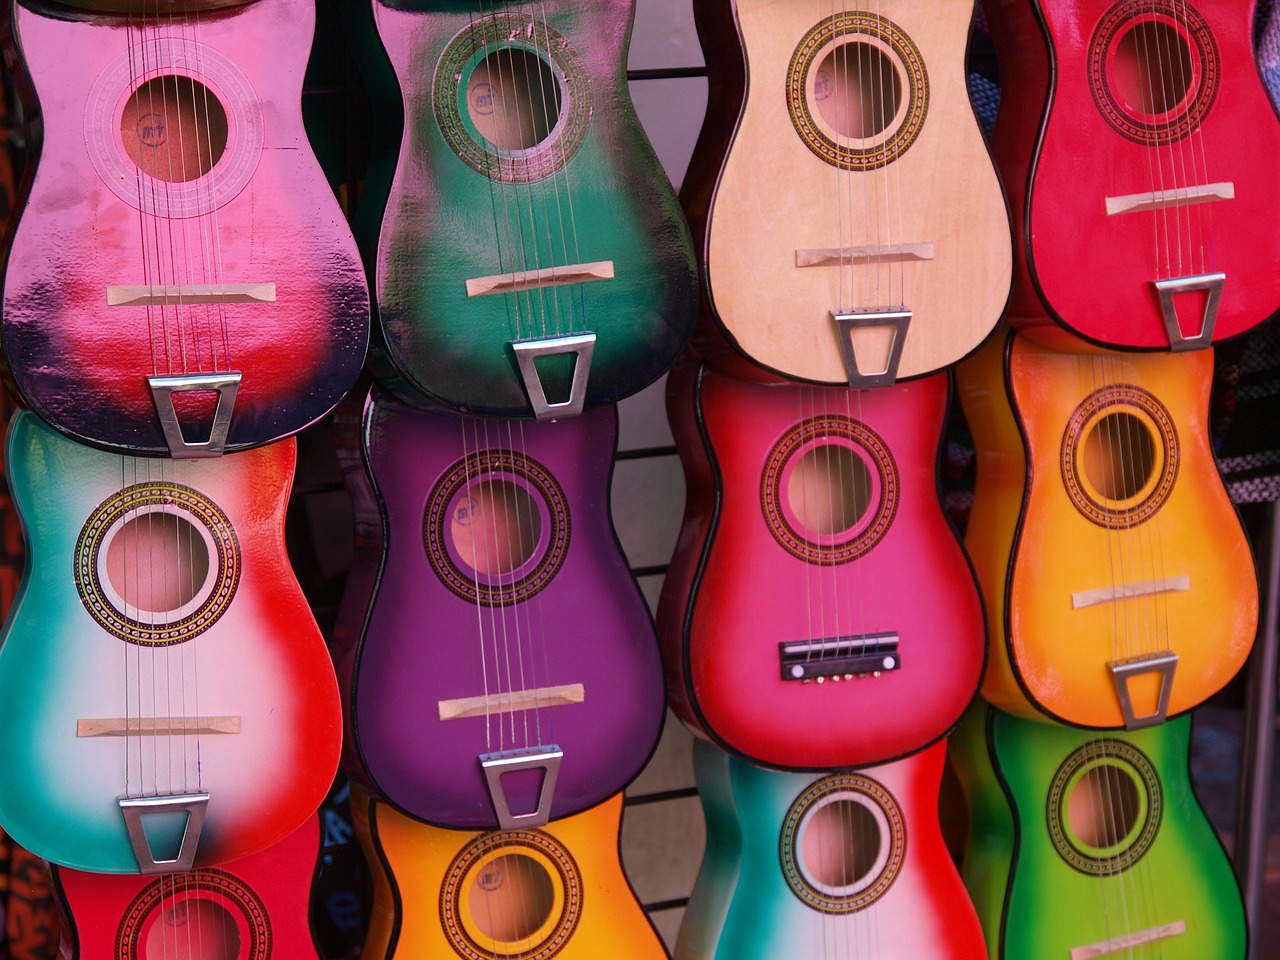 Escuelas de música en México. Una rica tradición cultural.